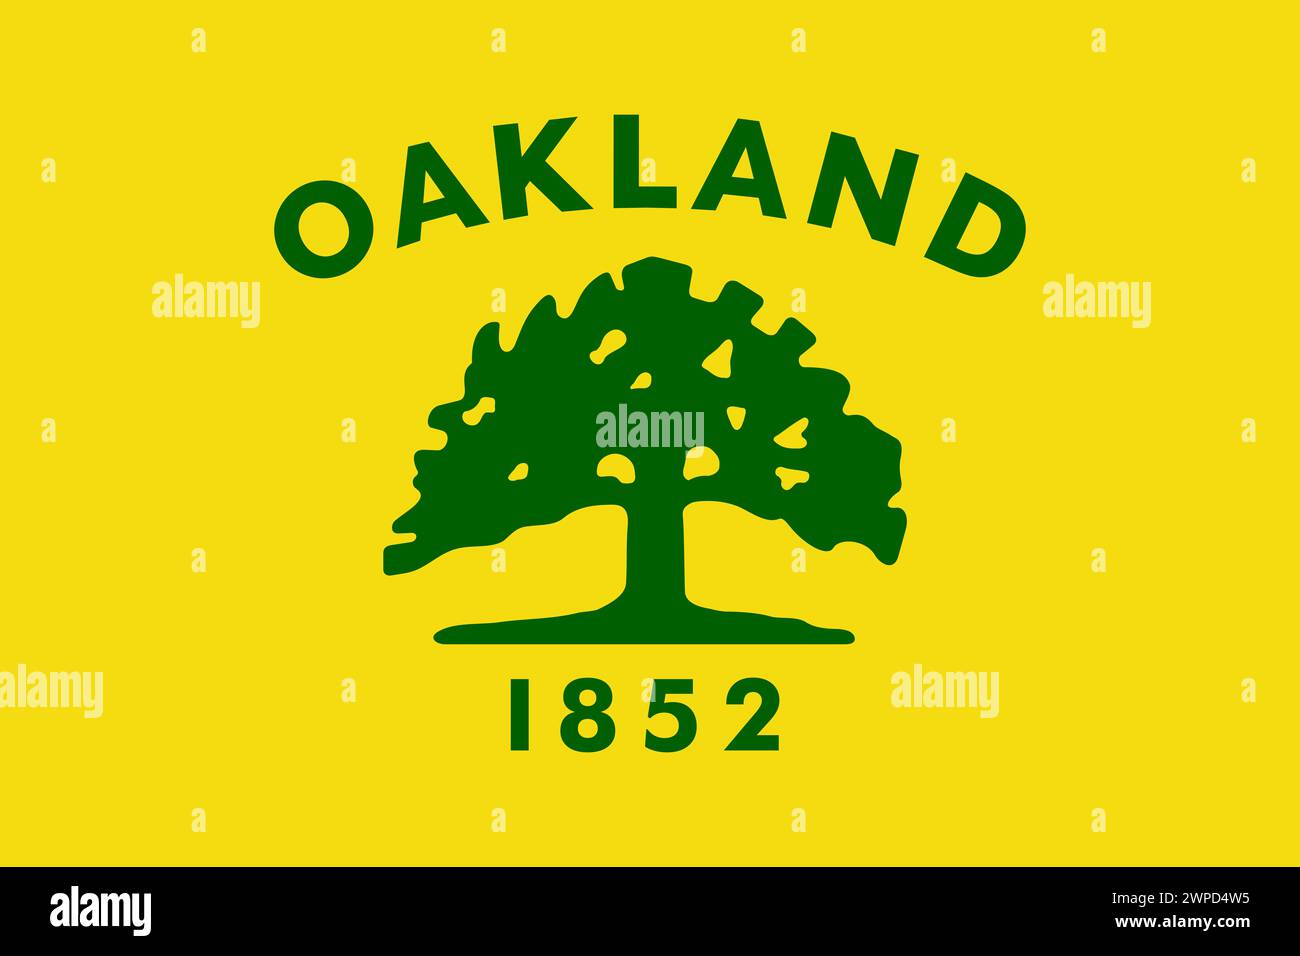 Drapeau de la ville d'Oakland - Californie Banque D'Images